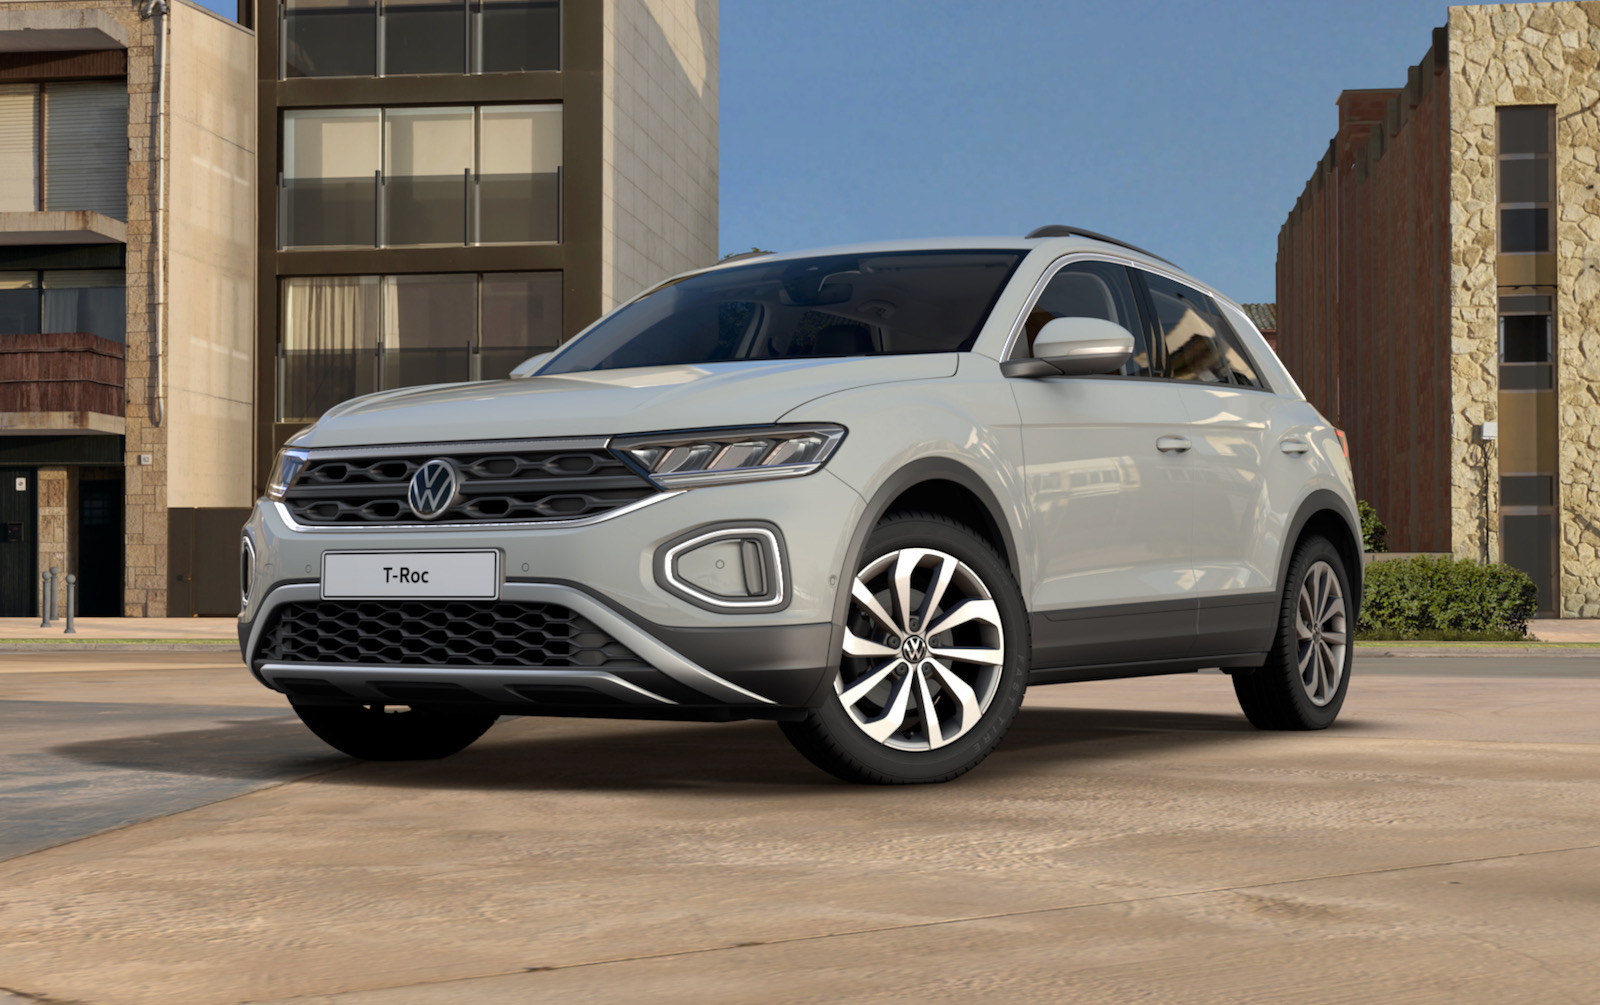 Entry-level Volkswagen T-Roc CityLife confirmed for Australia, arrives September